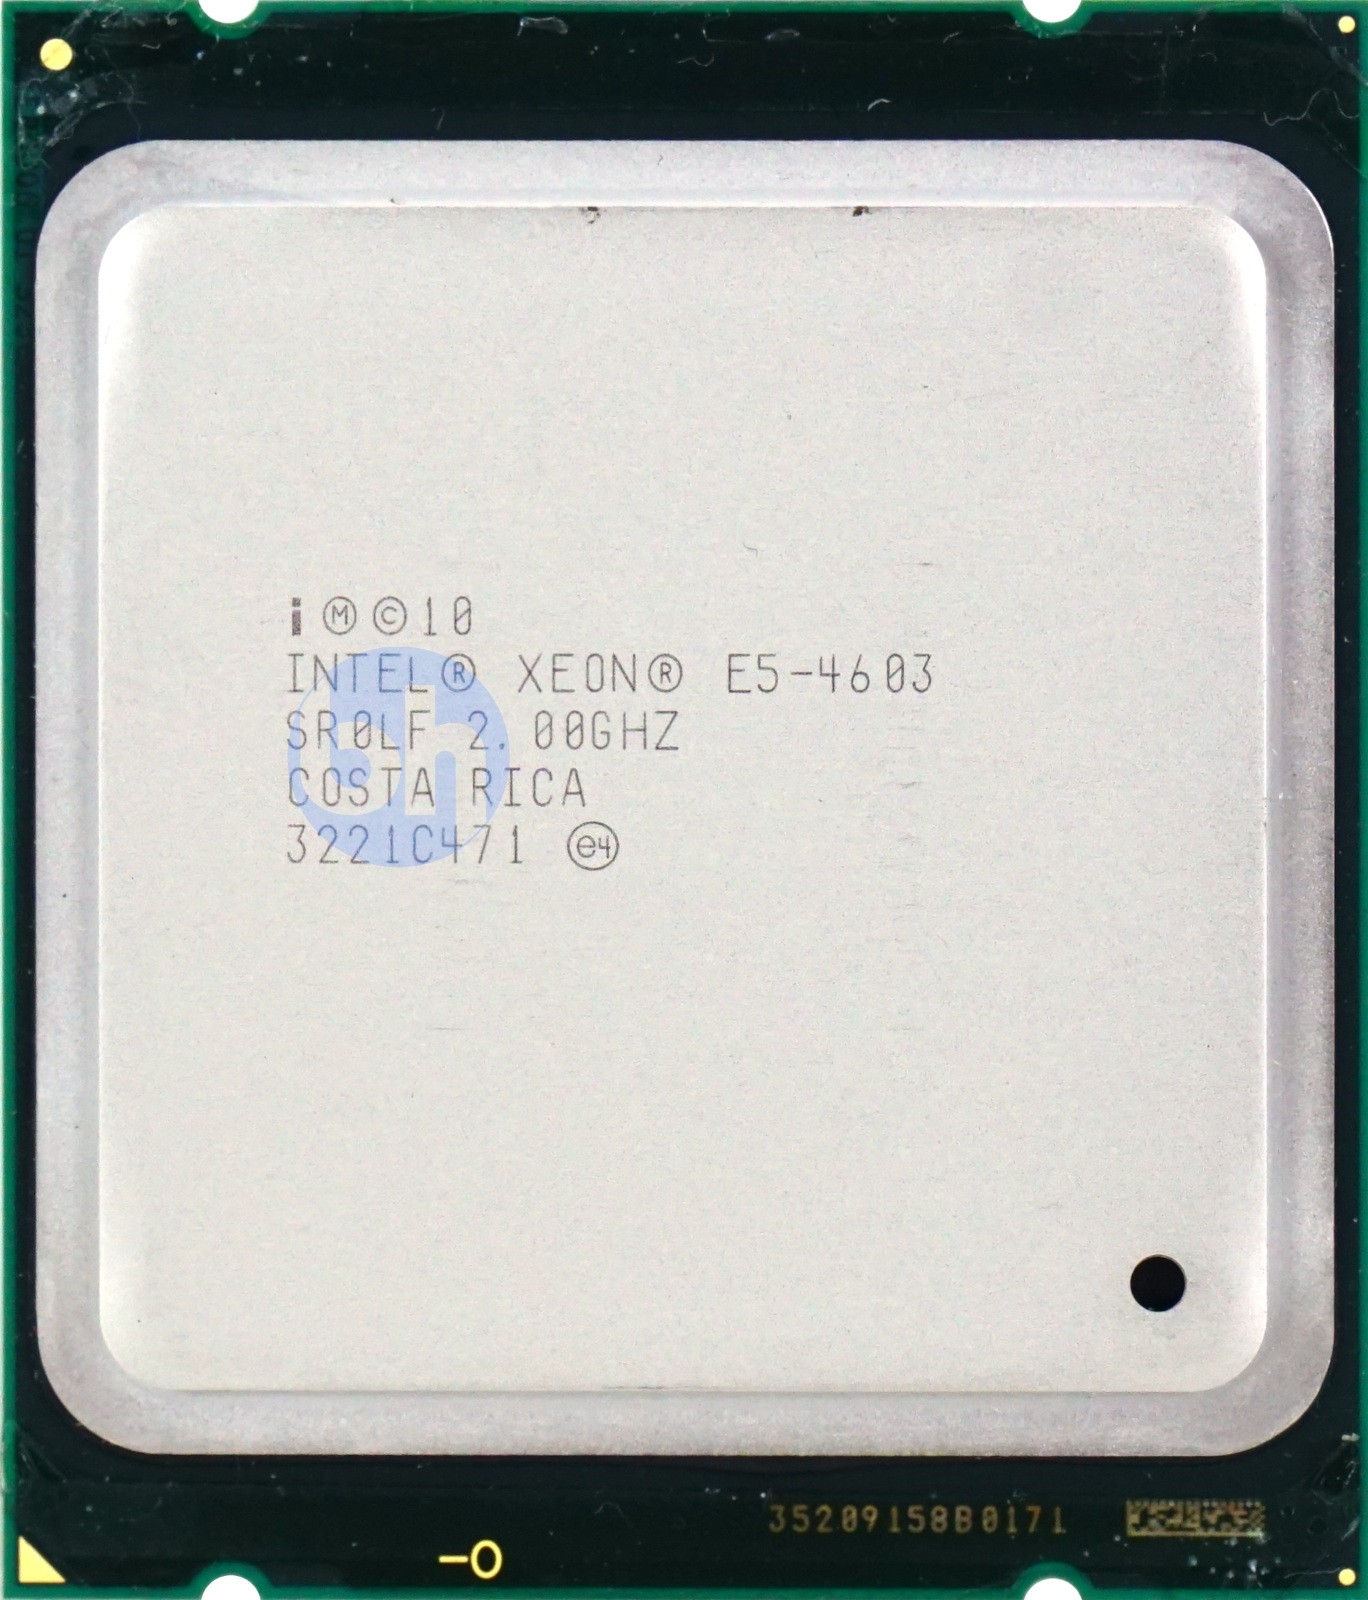 Intel Xeon E5-4603 V1 (SR0LF) 2.00GHz 4-Core LGA2011 95W 10MB CPU CPU0000319